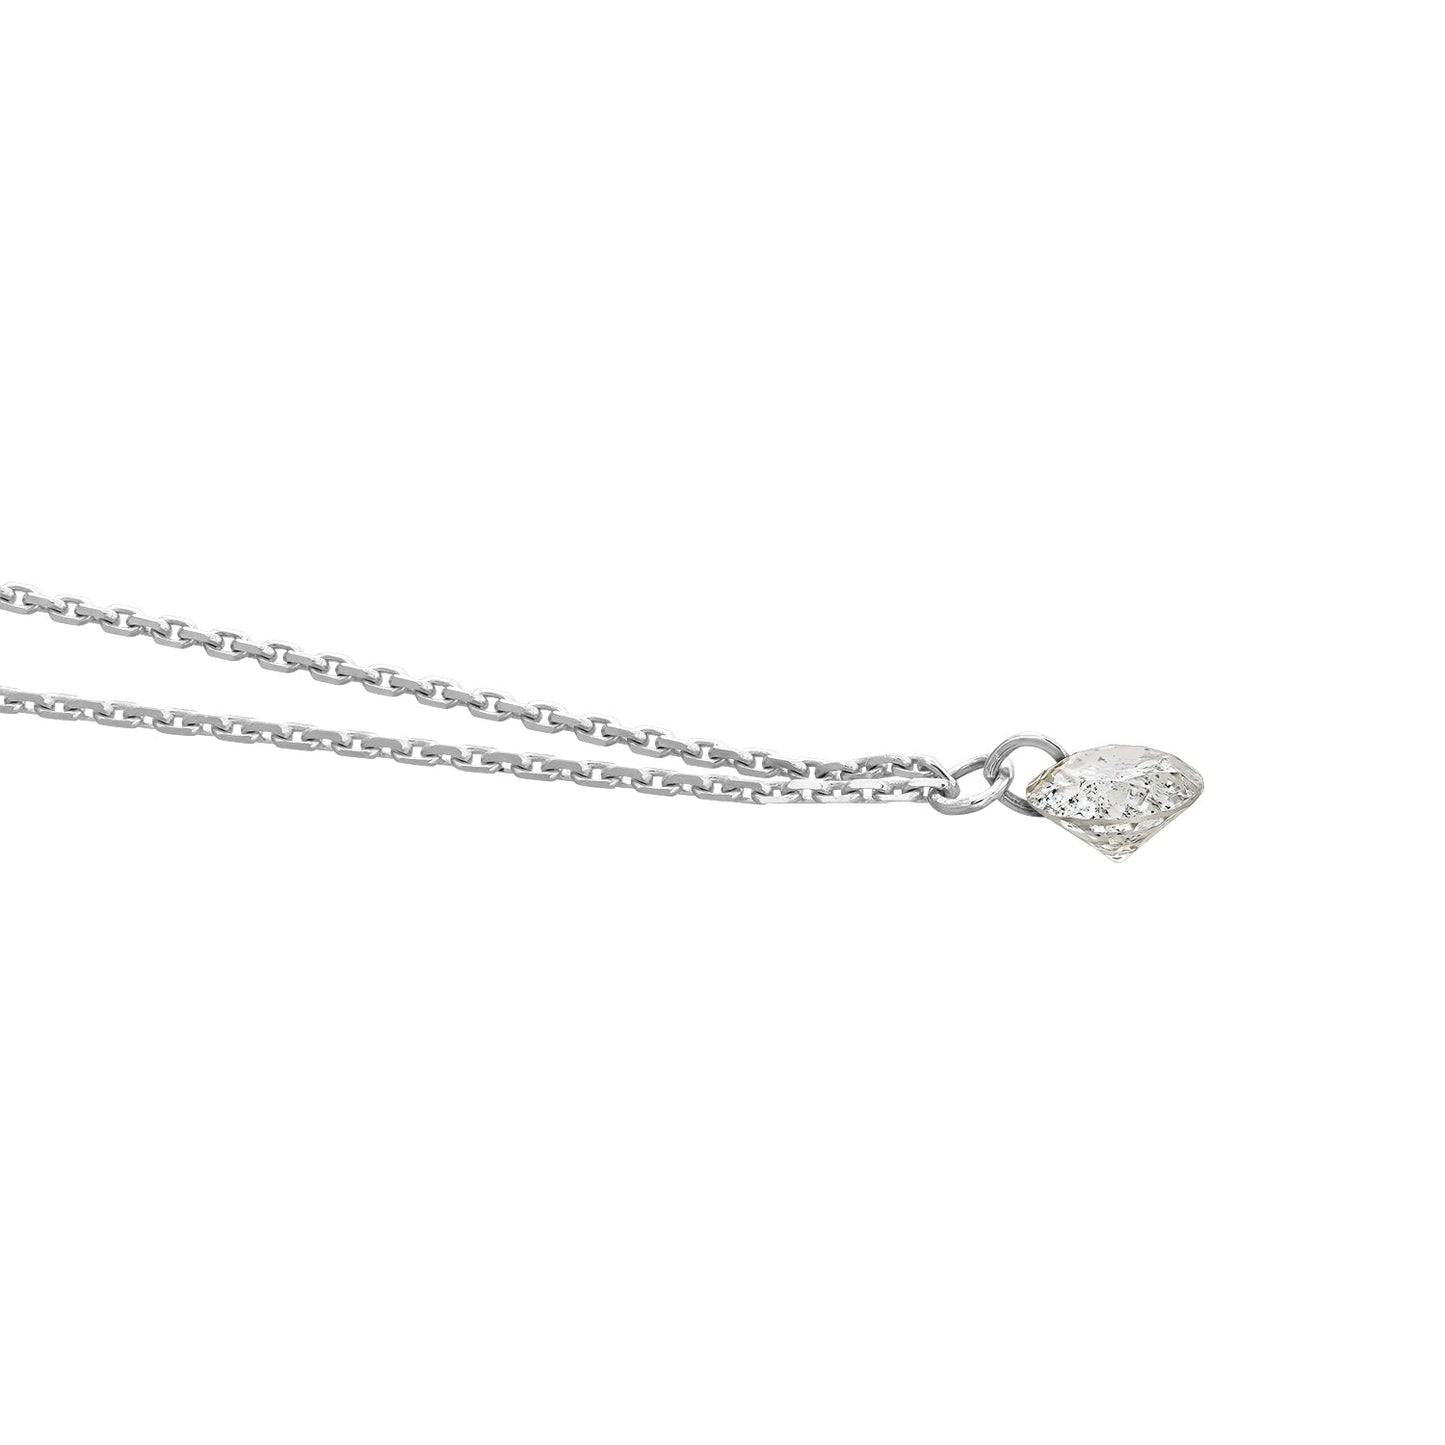 Gold Necklace 14K (585) Wispy with Diamonds 0.07 ct - White